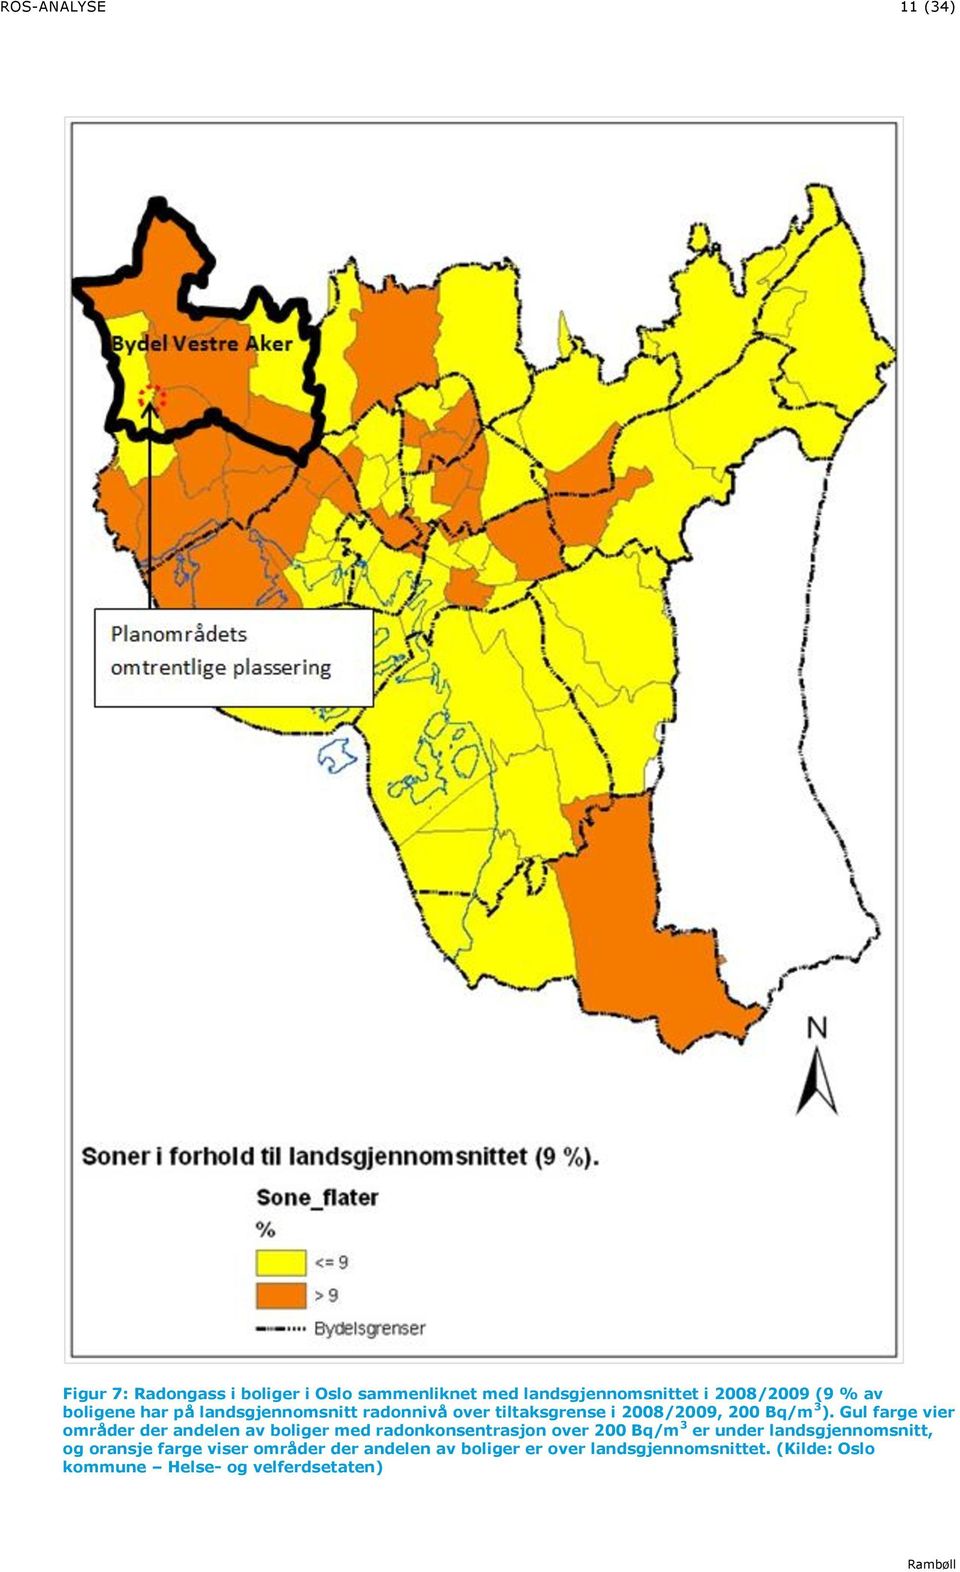 Gul farge vier områder der andelen av boliger med radonkonsentrasjon over 200 Bq/m 3 er under